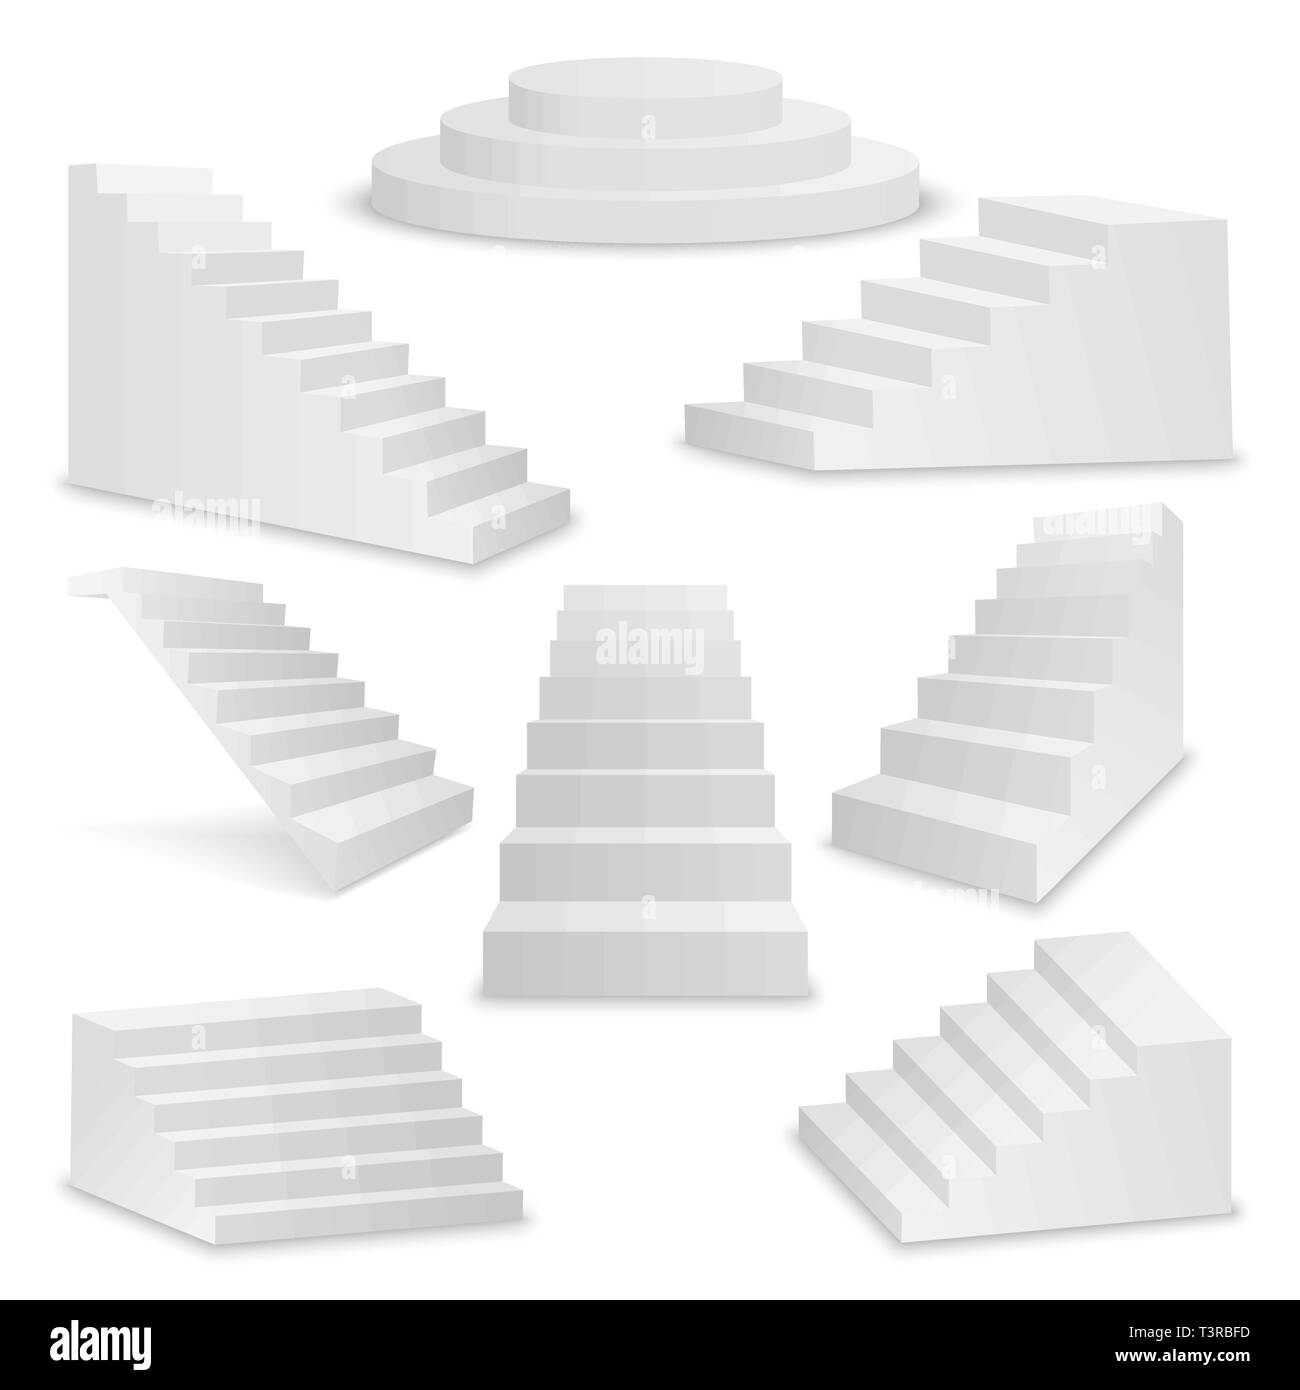 Vector 3d Realistische weißen Treppe Icon Set Closeup isoliert auf weißem Hintergrund. Design Template von Innentreppen, Vektor Schritte Sammlung Stock Vektor